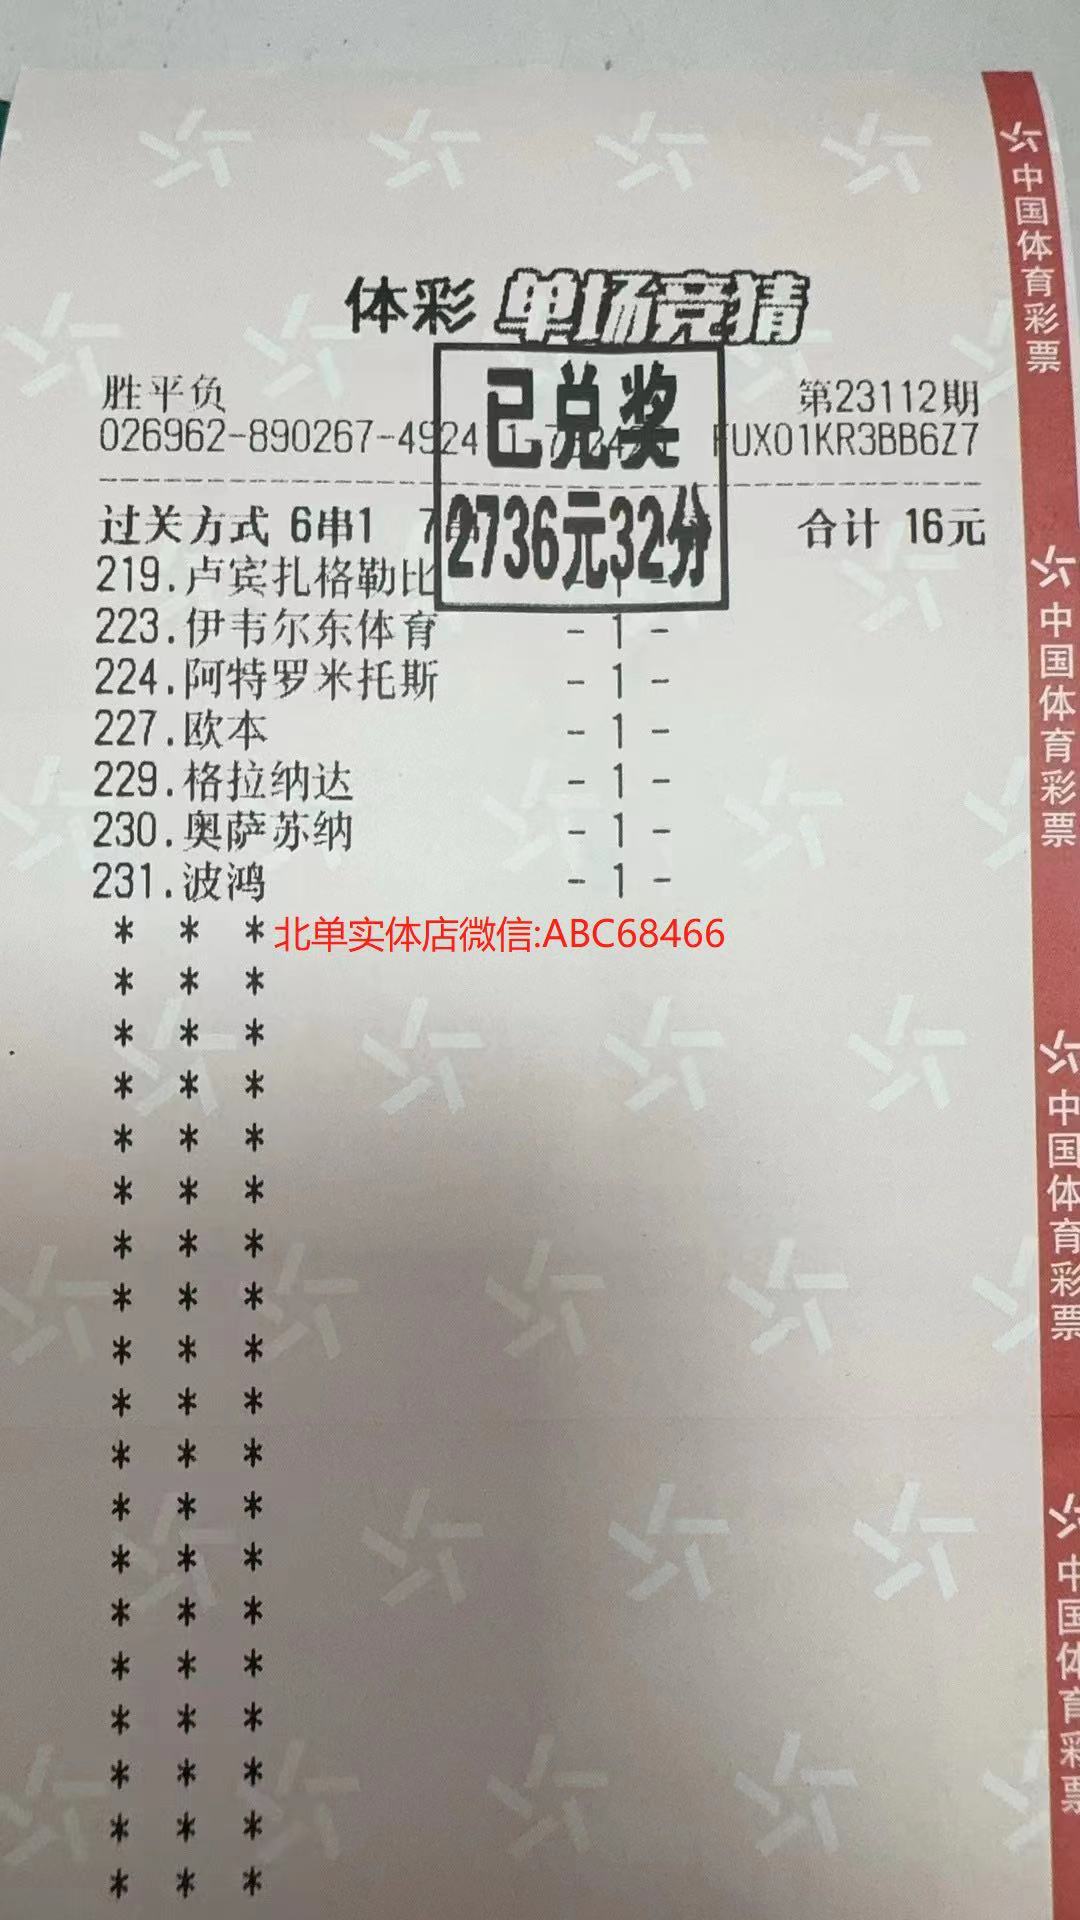 北京单场-北单推荐-北单实体店收米2736元-北单微信购买